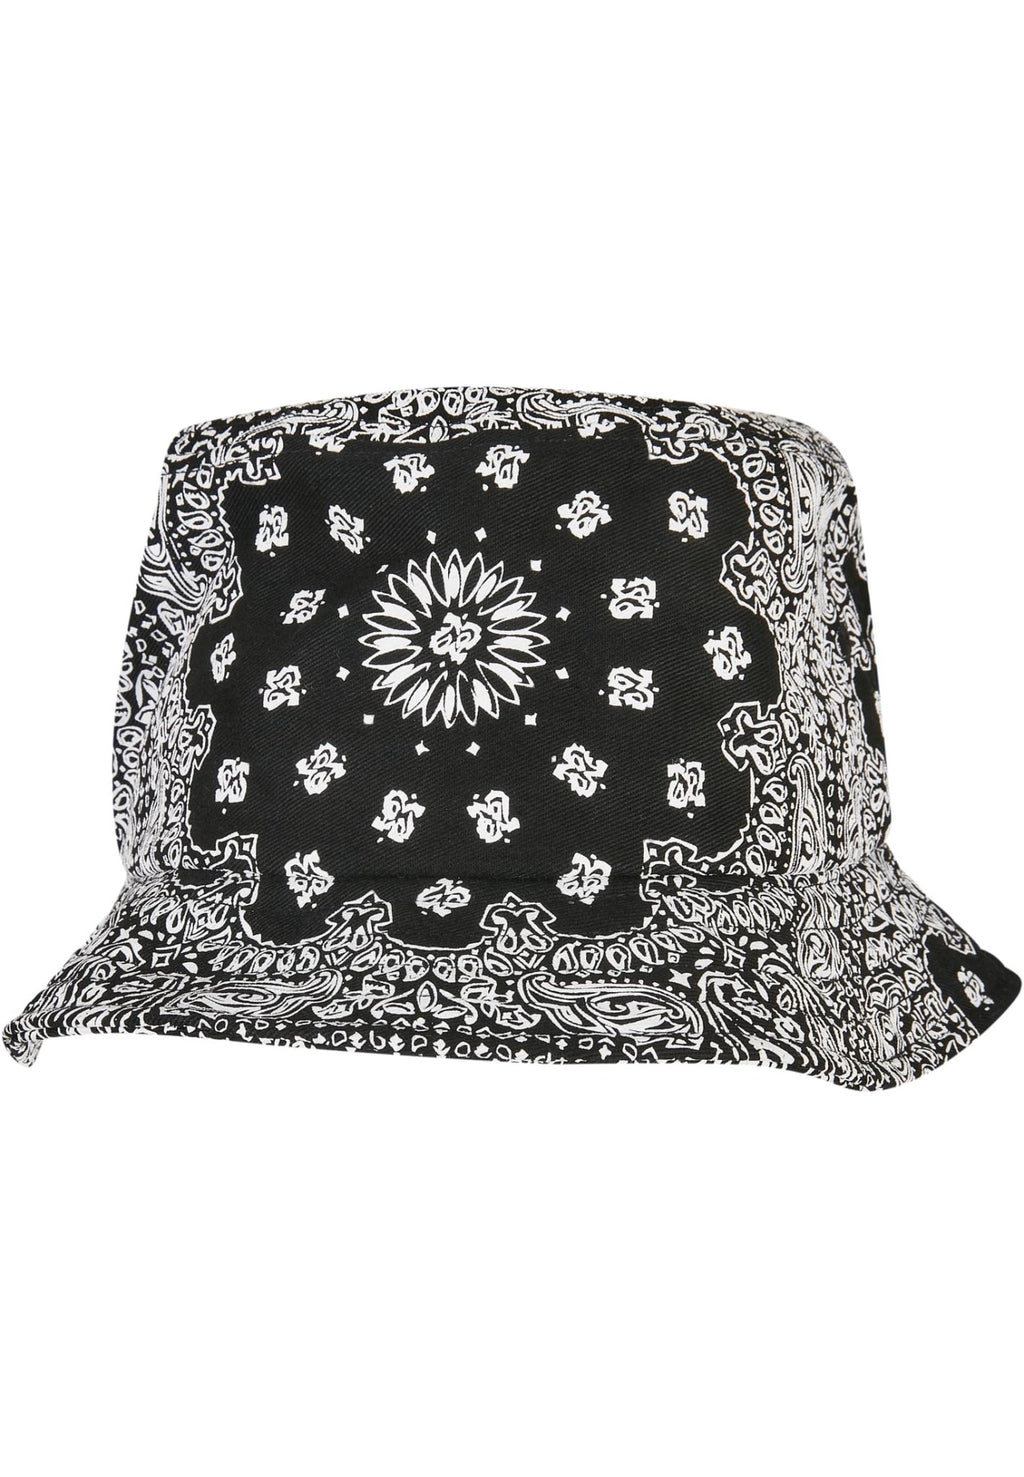 Sombrero de cubo con estampado de bandana - Negro